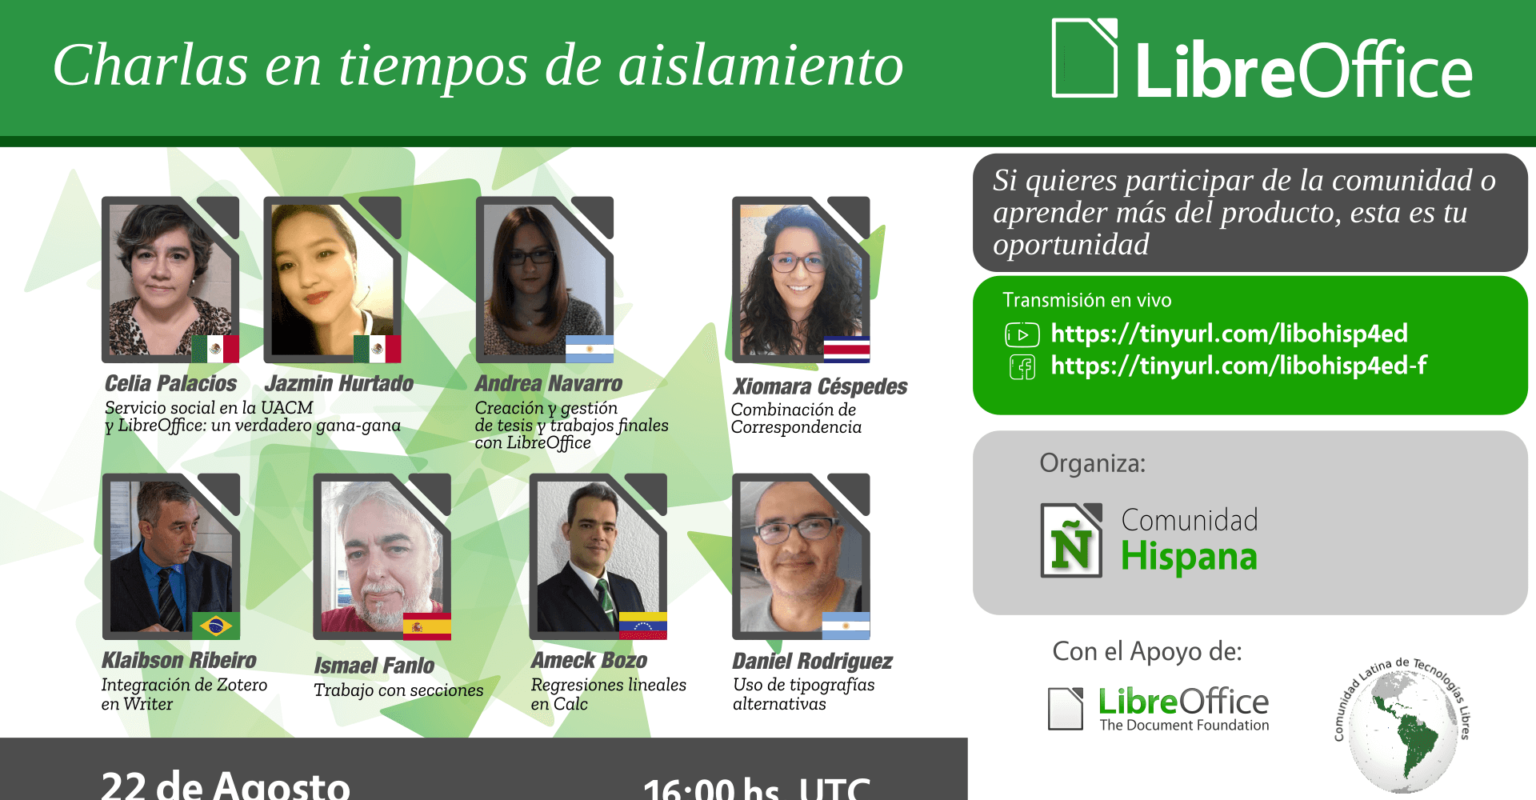 Cartel sobre de la charla de la comunidad hispana de LibreOffice del próximo 22/08/2020.